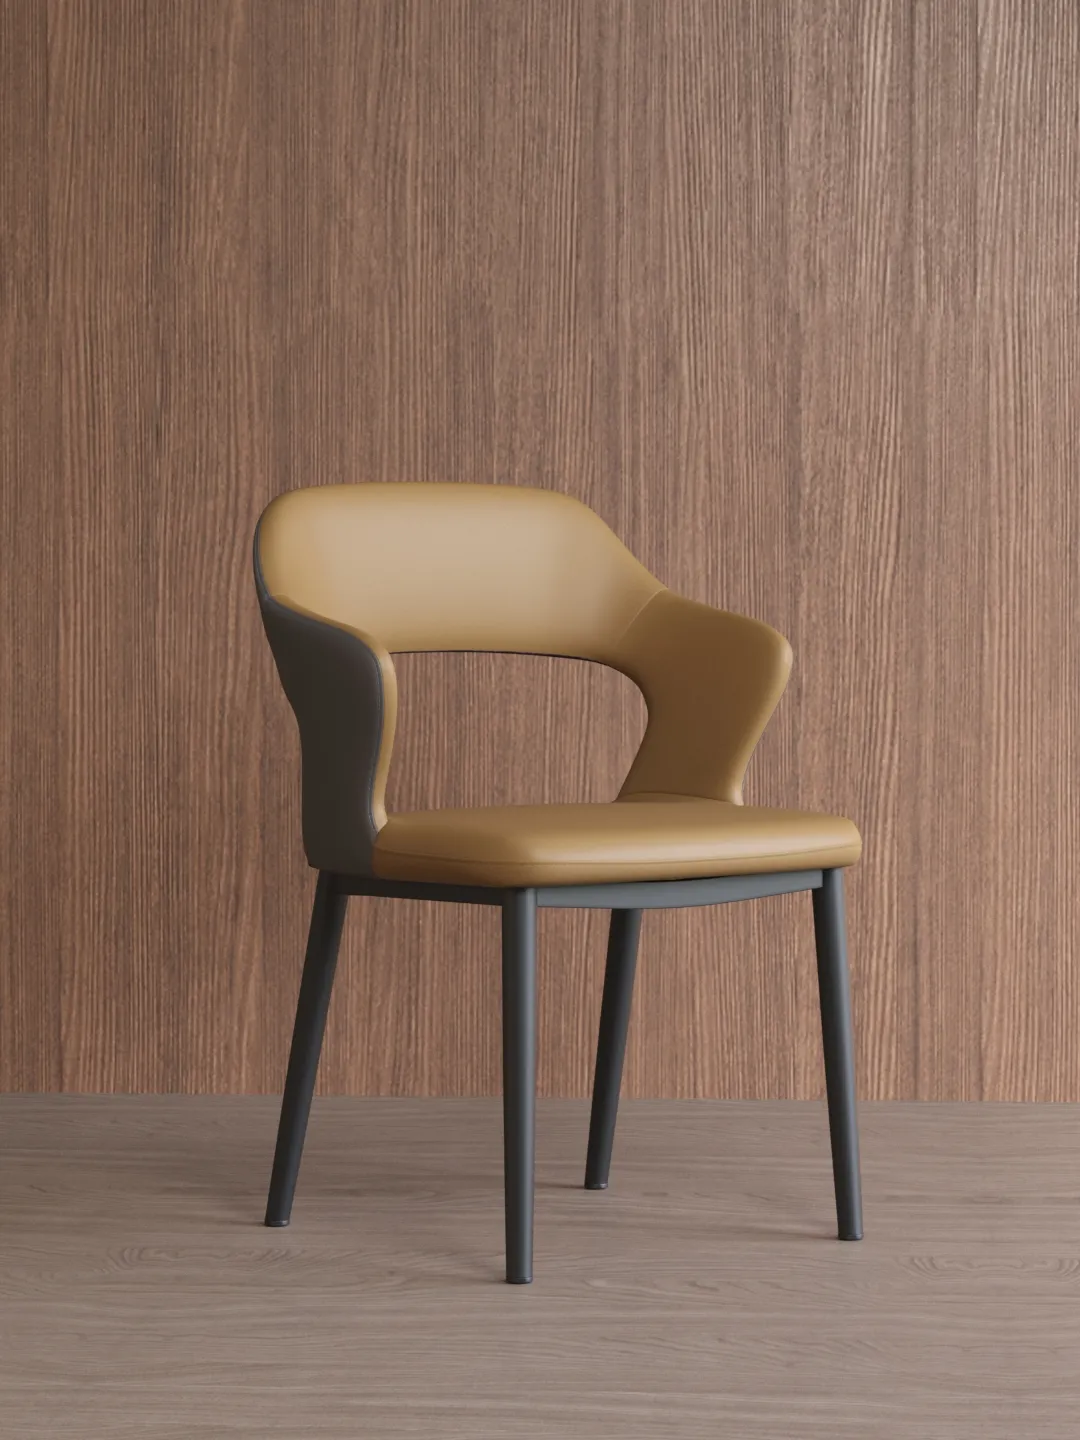 Mobília colorida do restaurante do agregado familiar do estilo nórdico moderno Cadeiras de jantar do couro modernas com quadro do metal